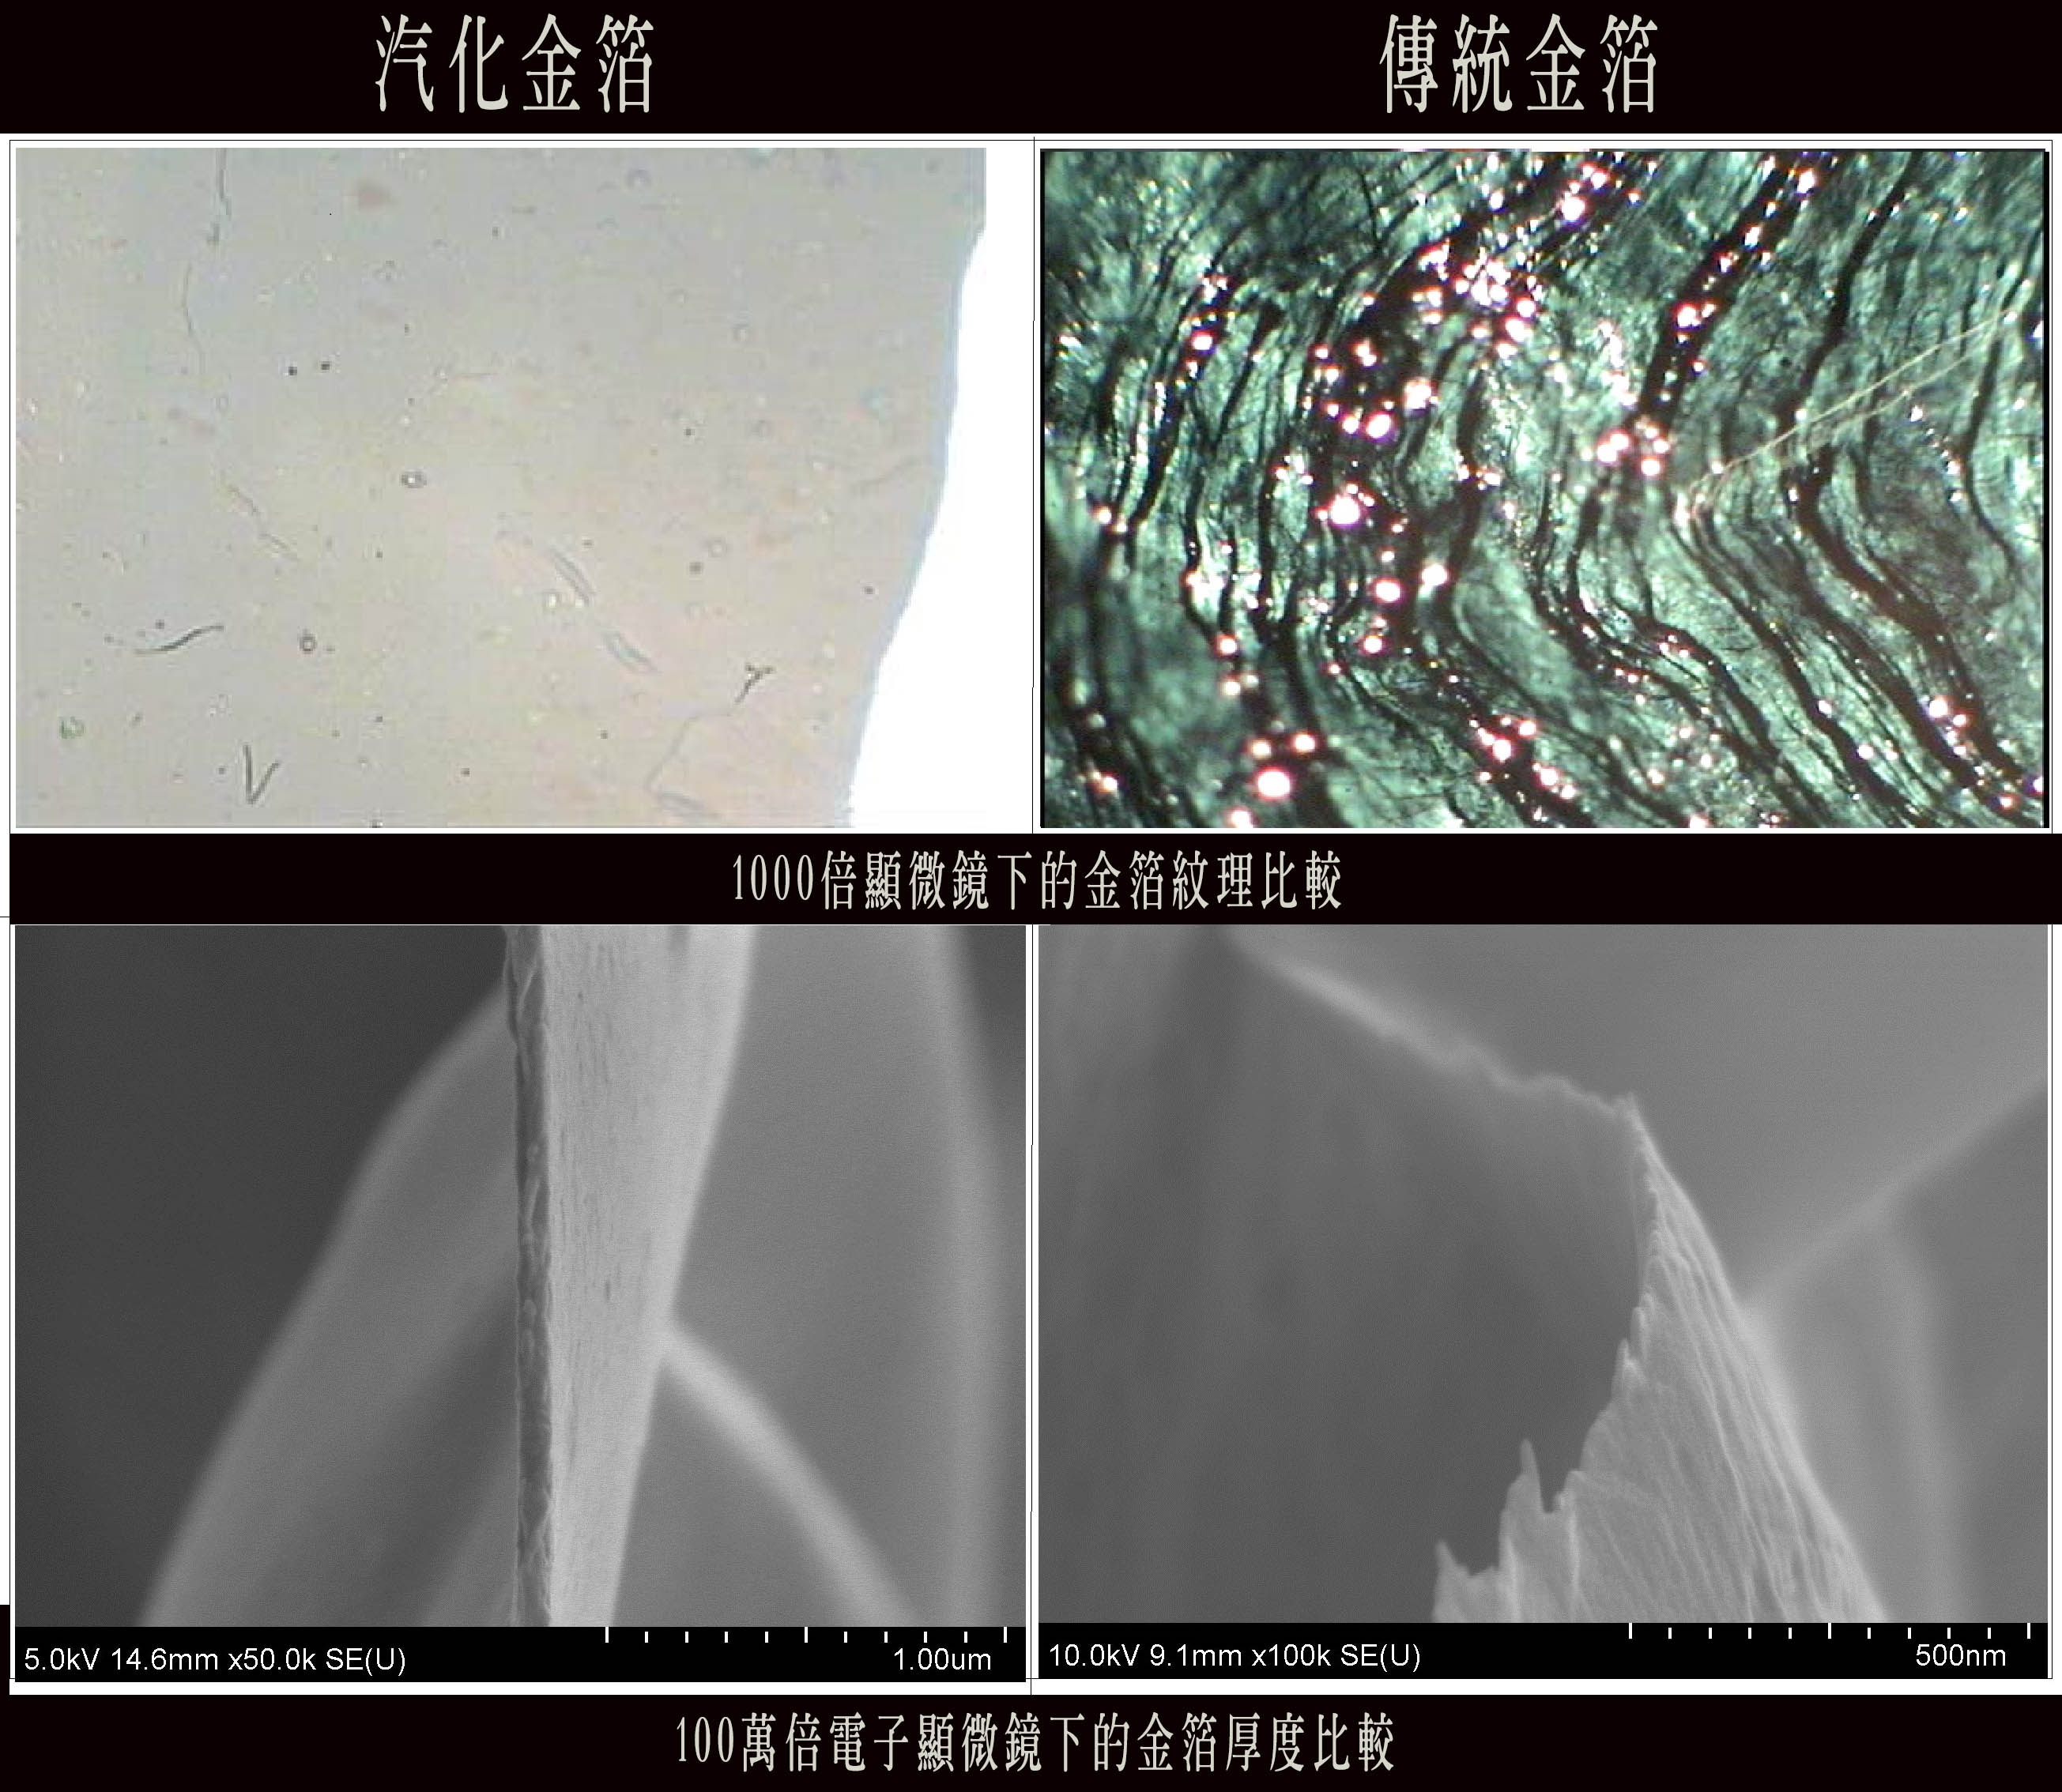 汽化金與傳統金箔在顯微鏡下可看出紋理的截然不同。